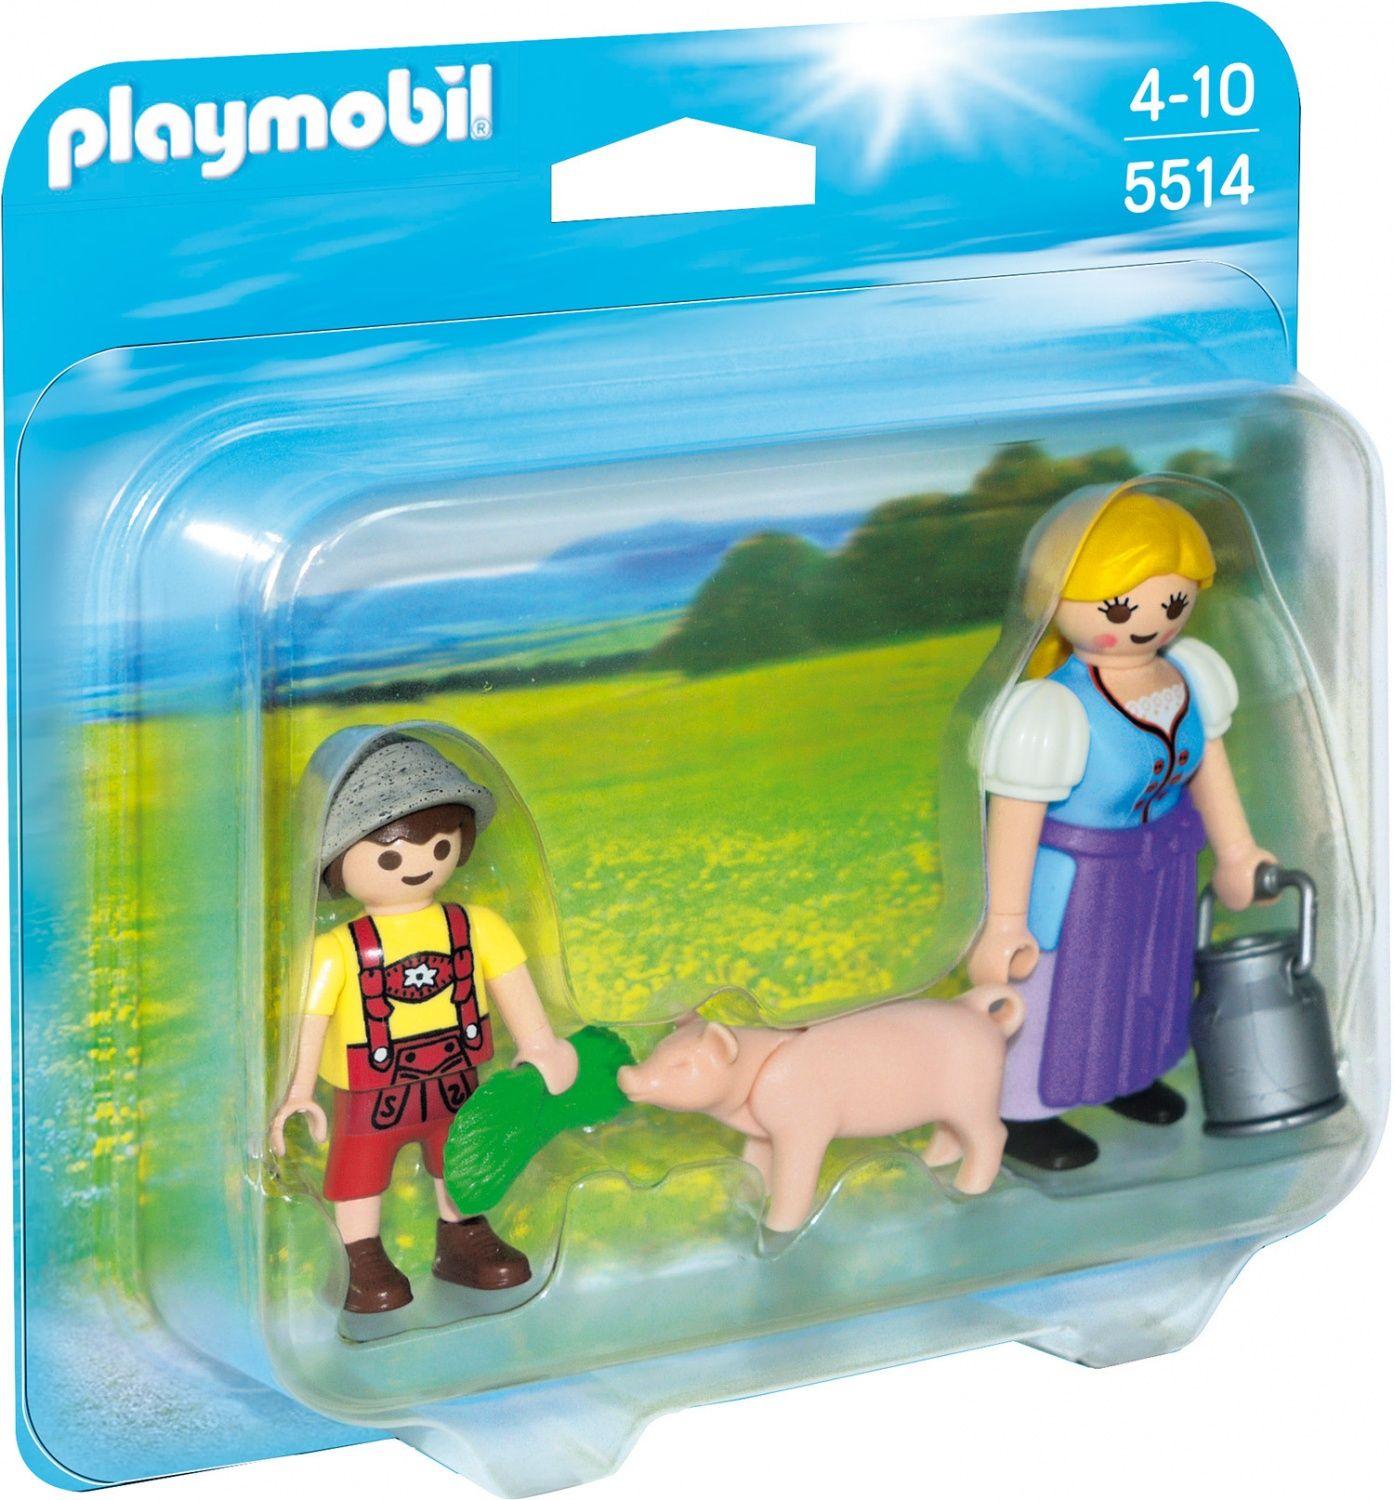 Playmobil Country 6158 : enclos des animaux de la forêt